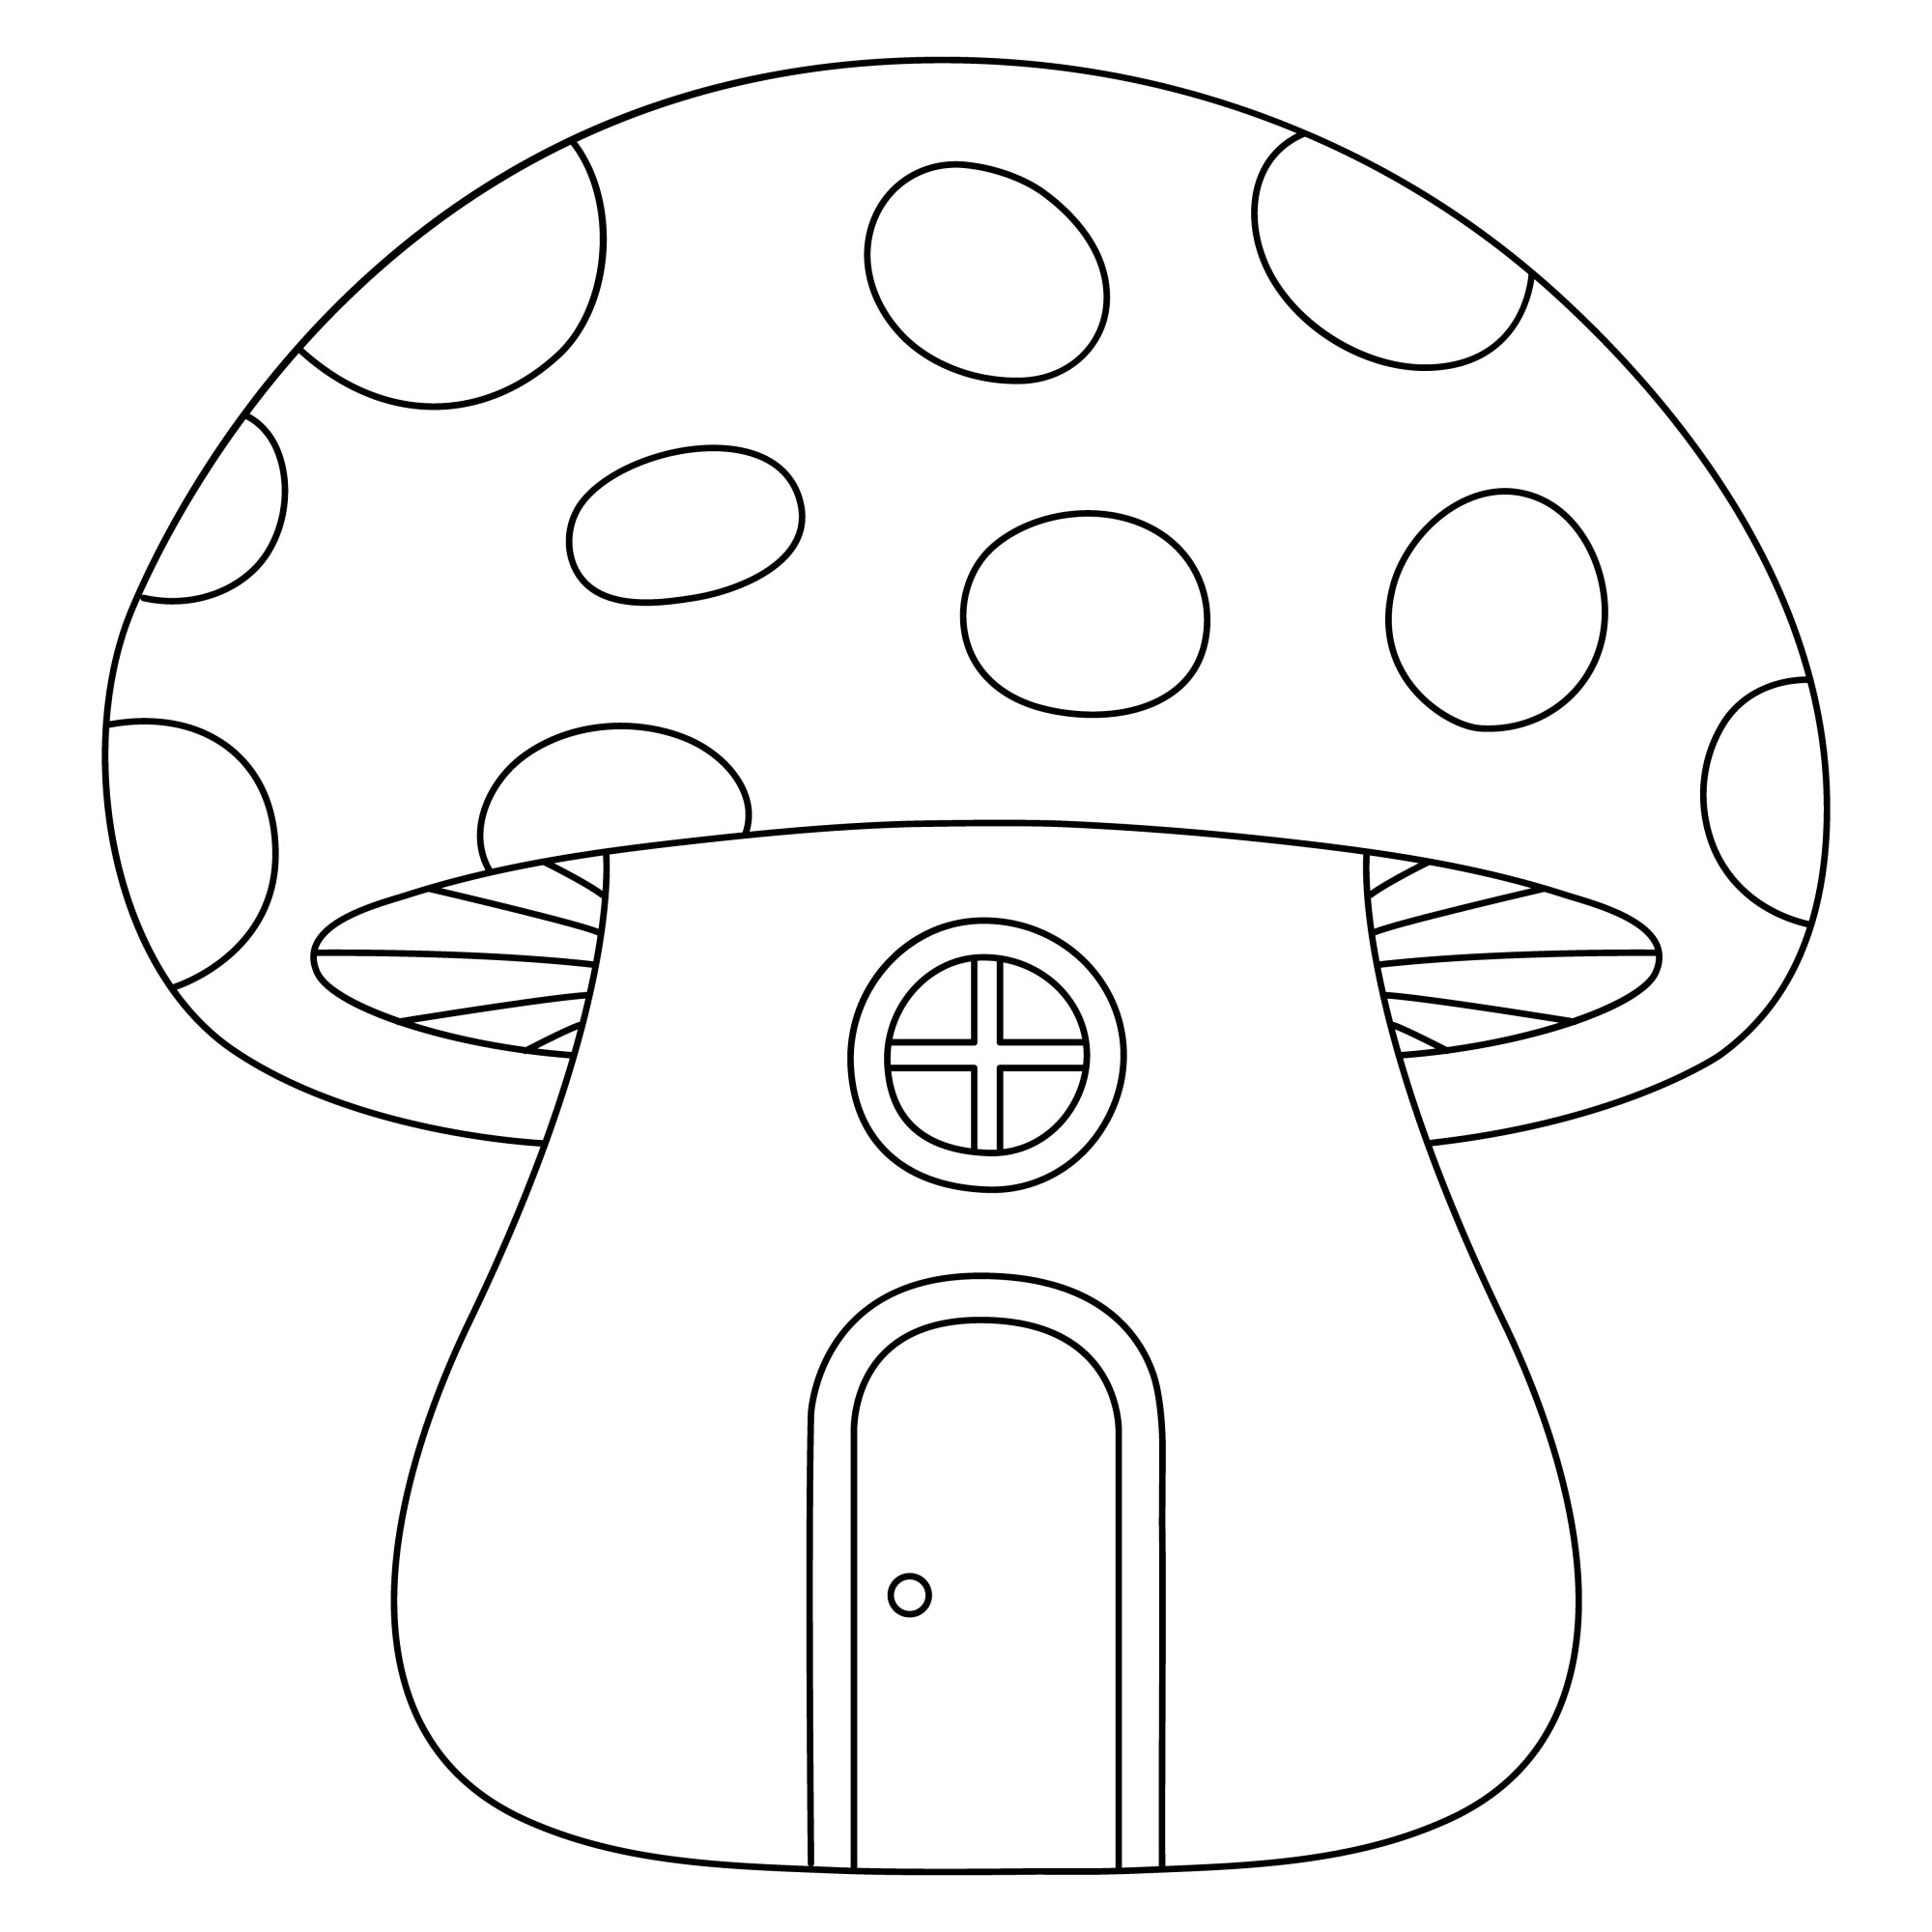 Раскраска для детей: большой домик гриб с дверью и окошком